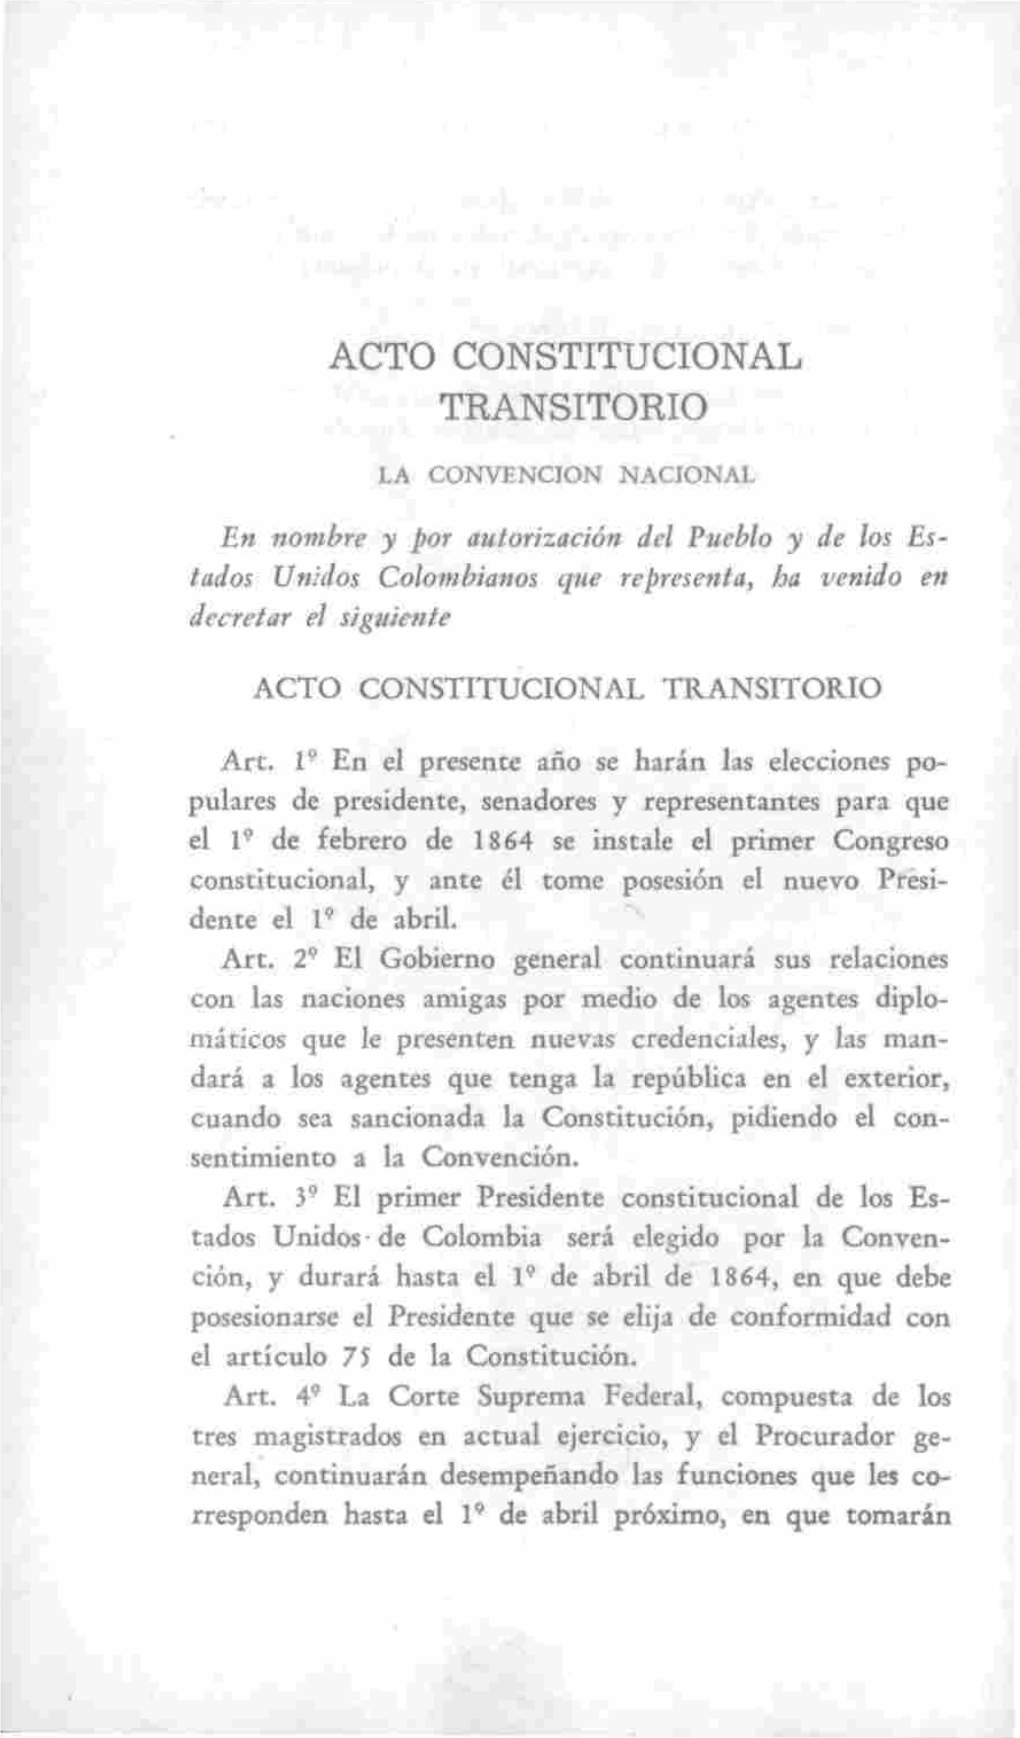 Acto Constitucional Transitorio